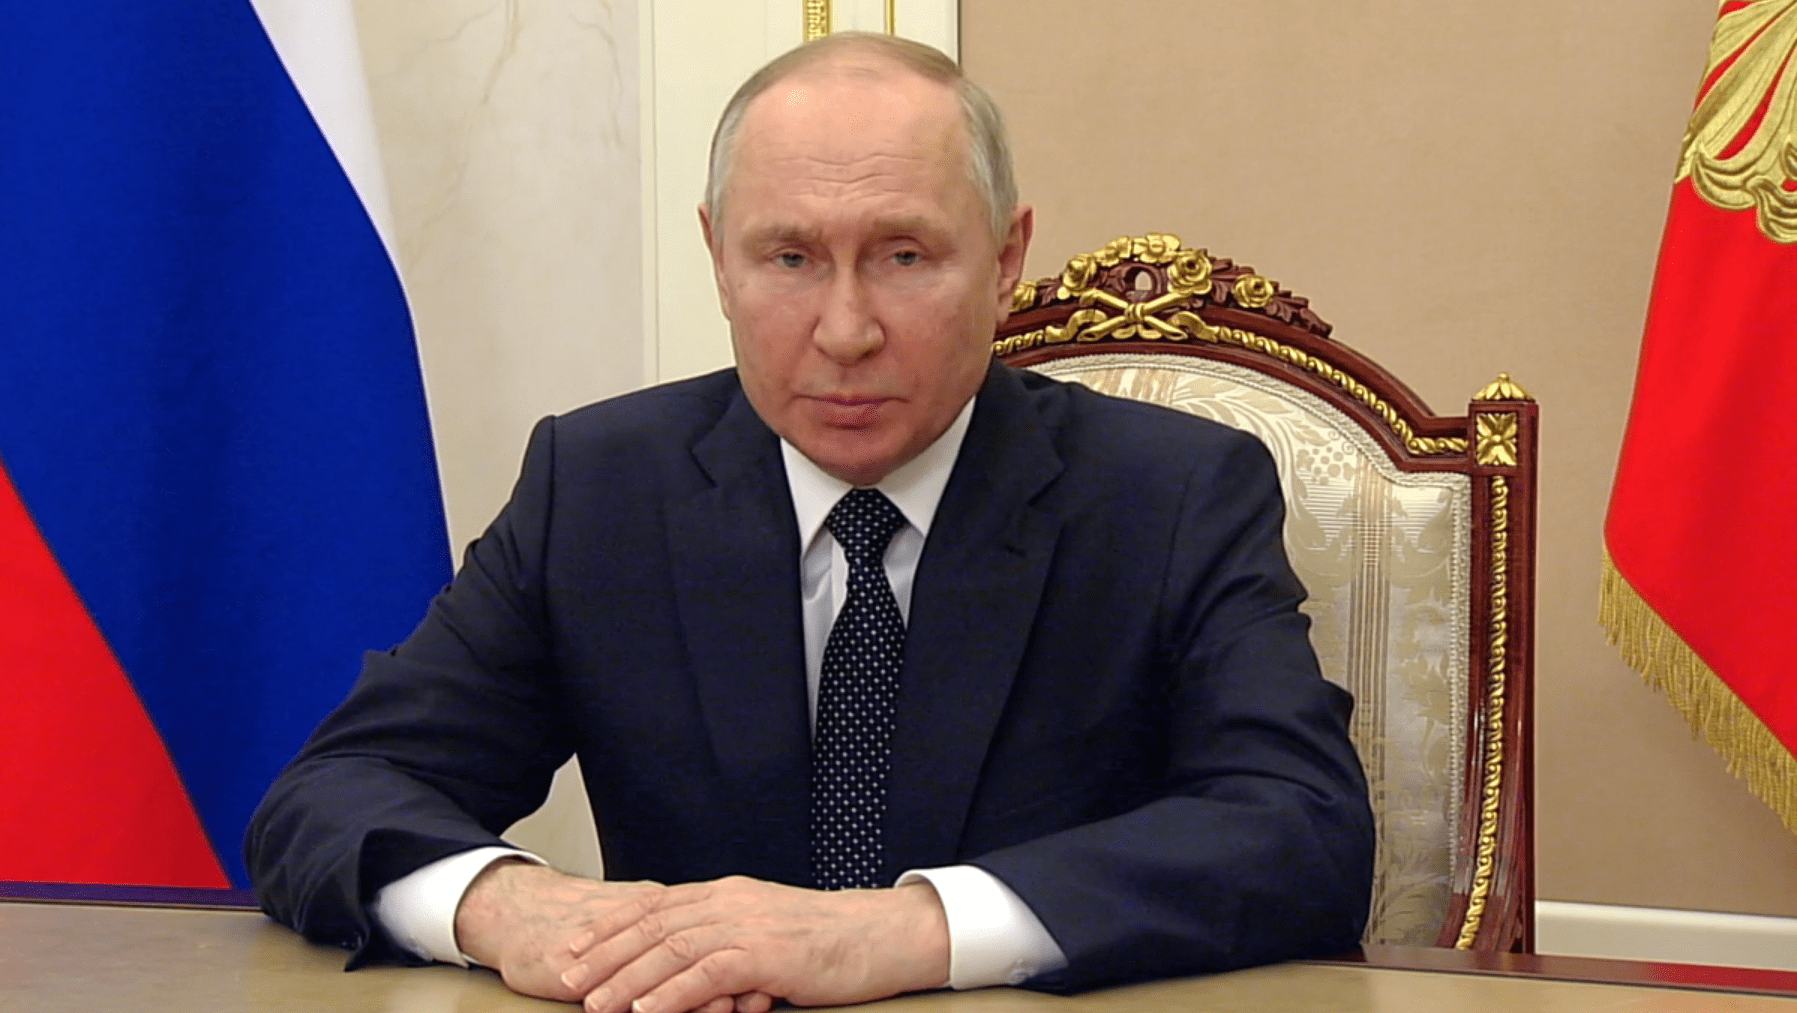 Президент России Путин констатировал появление в мире новых очагов напряженности